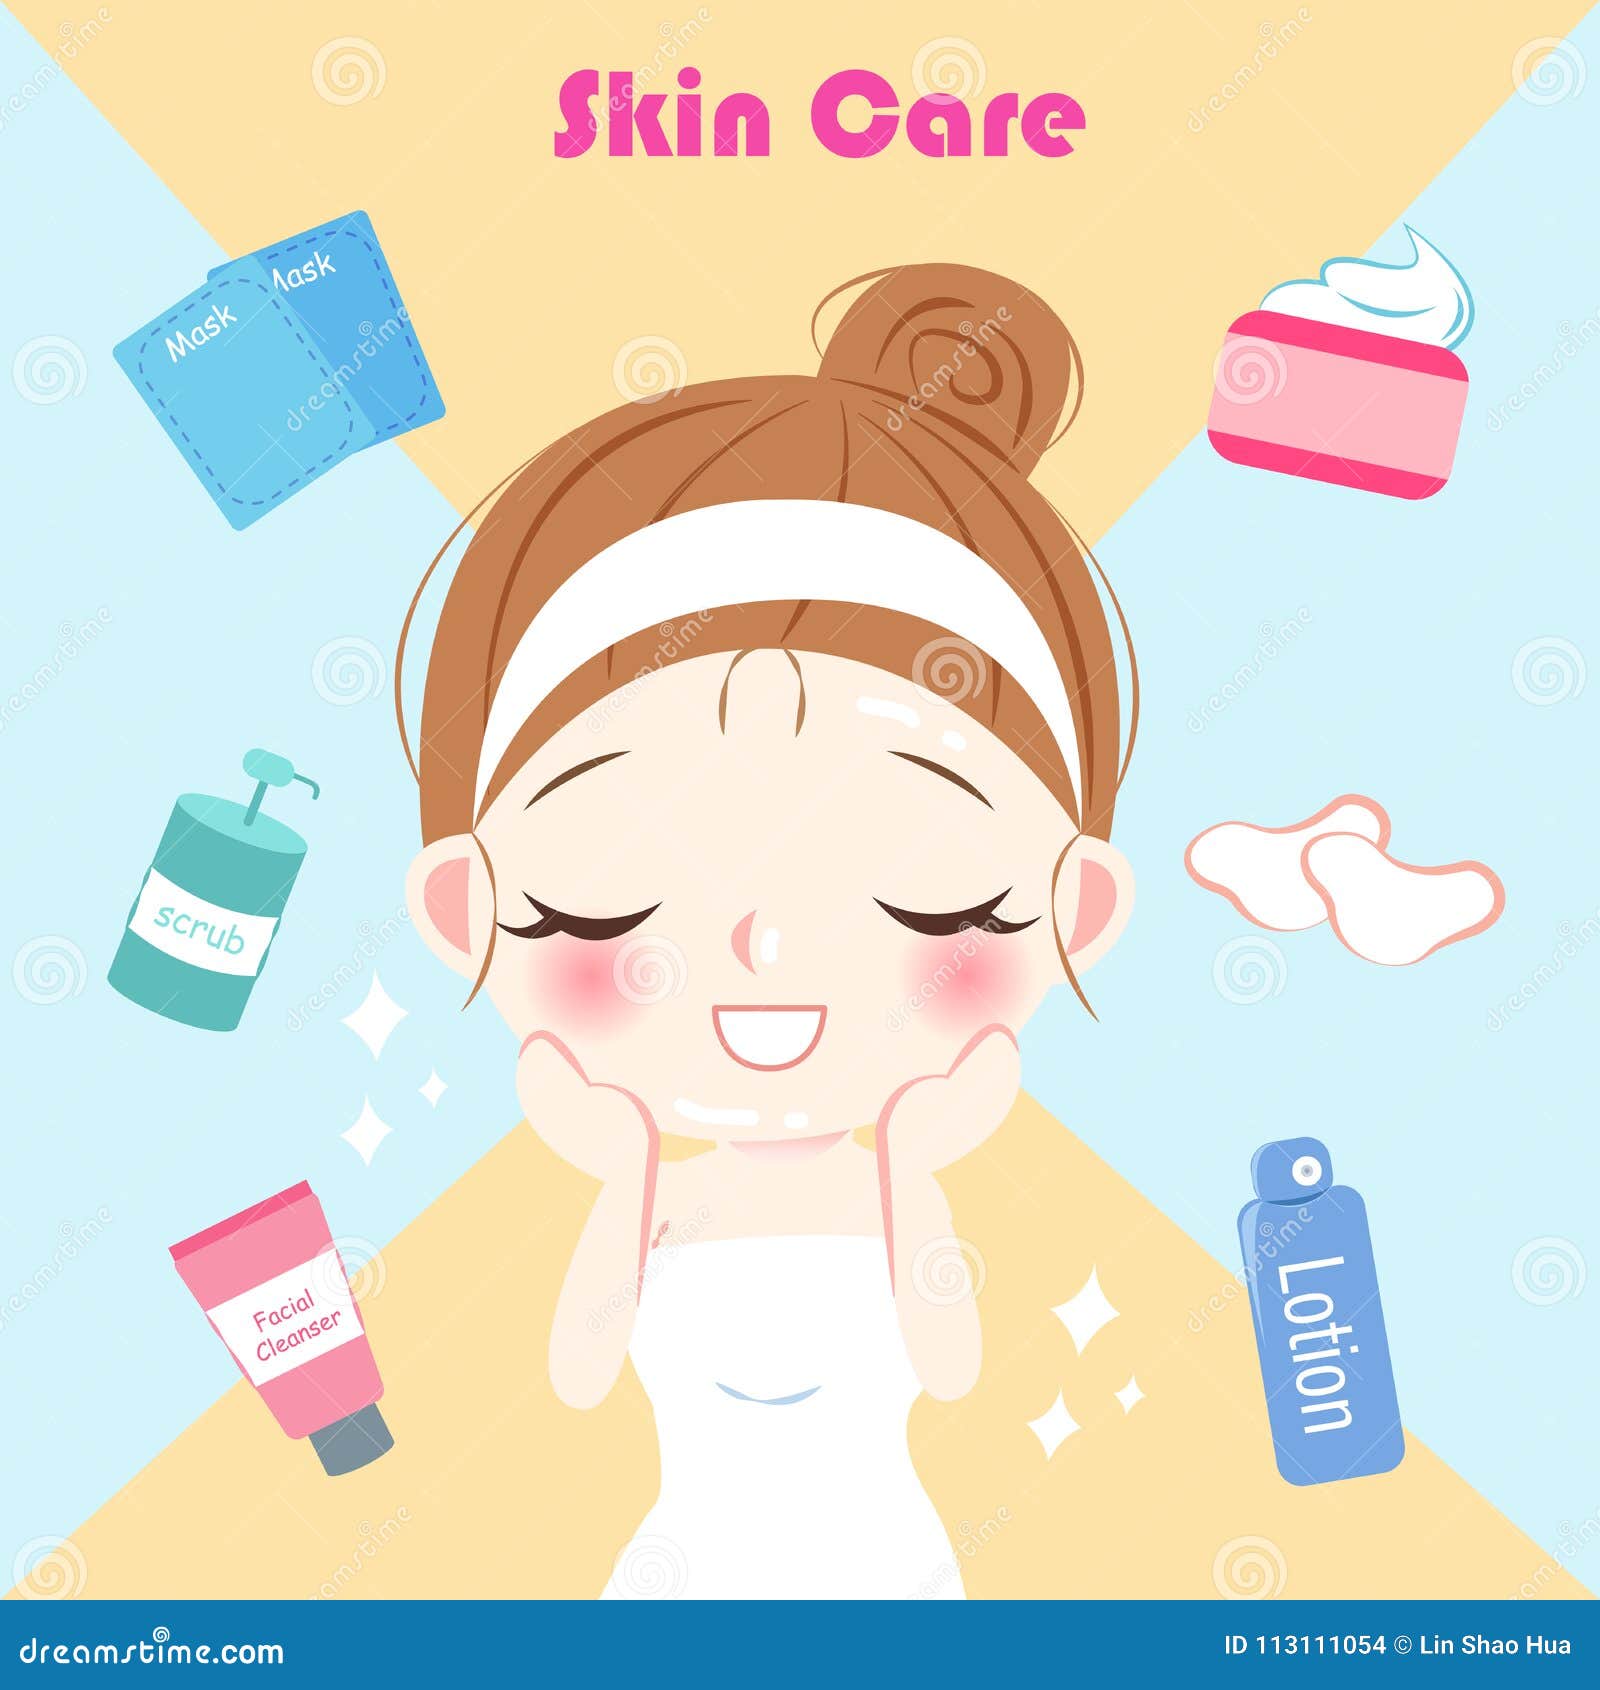 Cartoon skin care woman stock illustration. Illustration of cartoon -  113111054